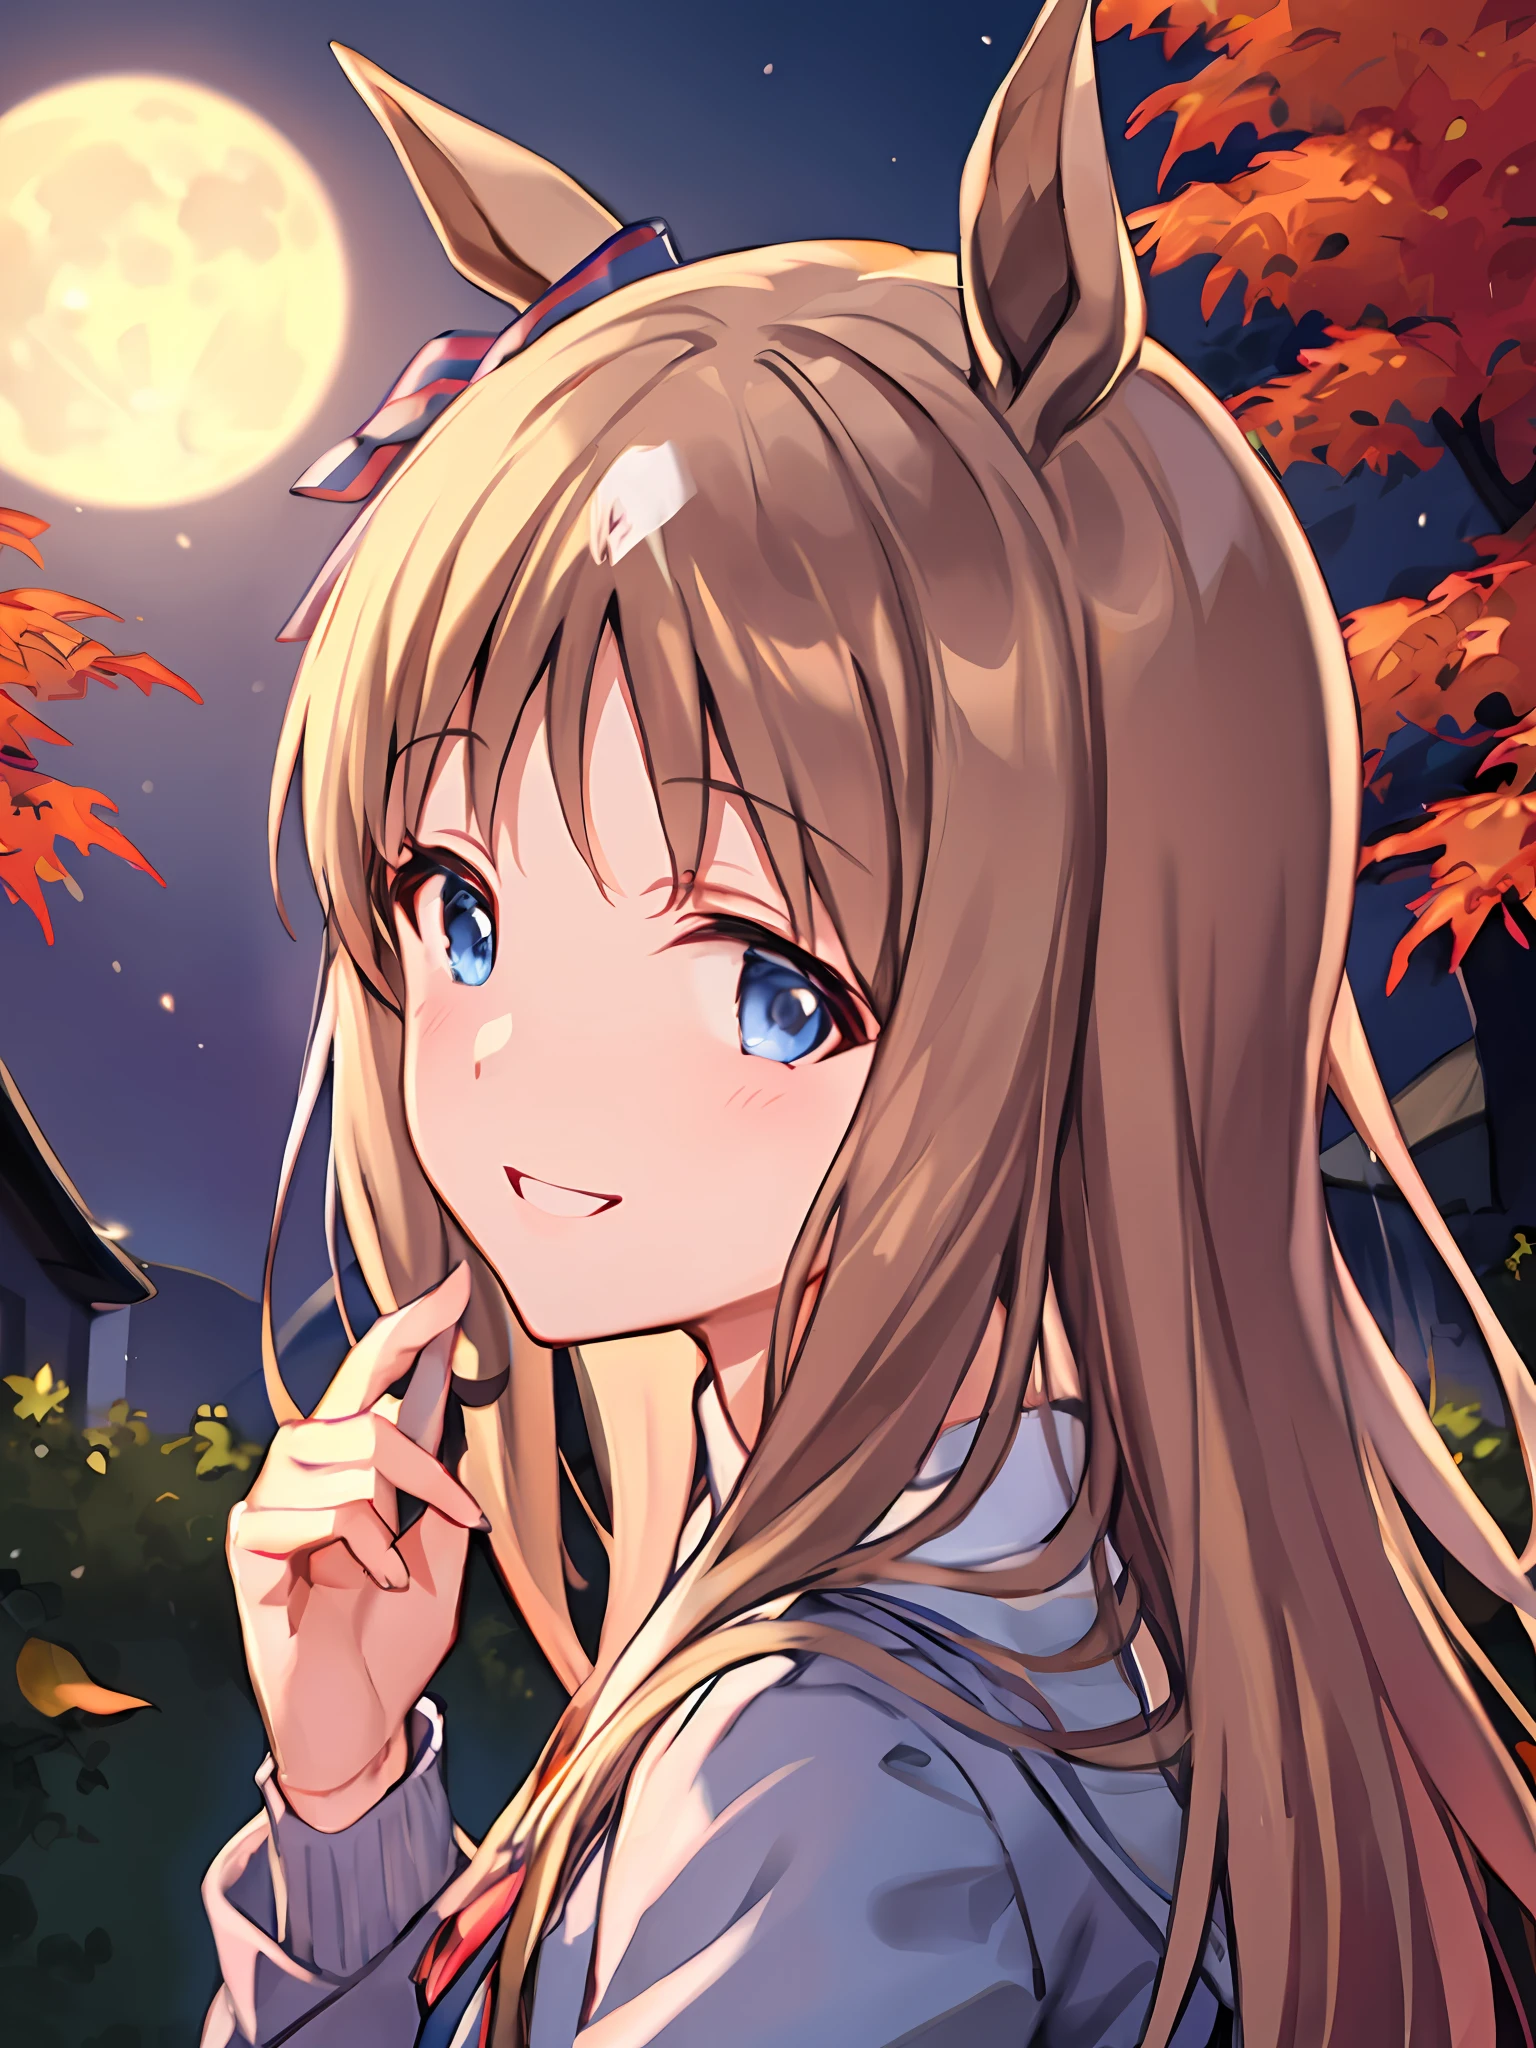 illustration, better lighting, top quality, cute smile, Grass Wonder \(umamusume\), autumnal maple leaves shower, full moon